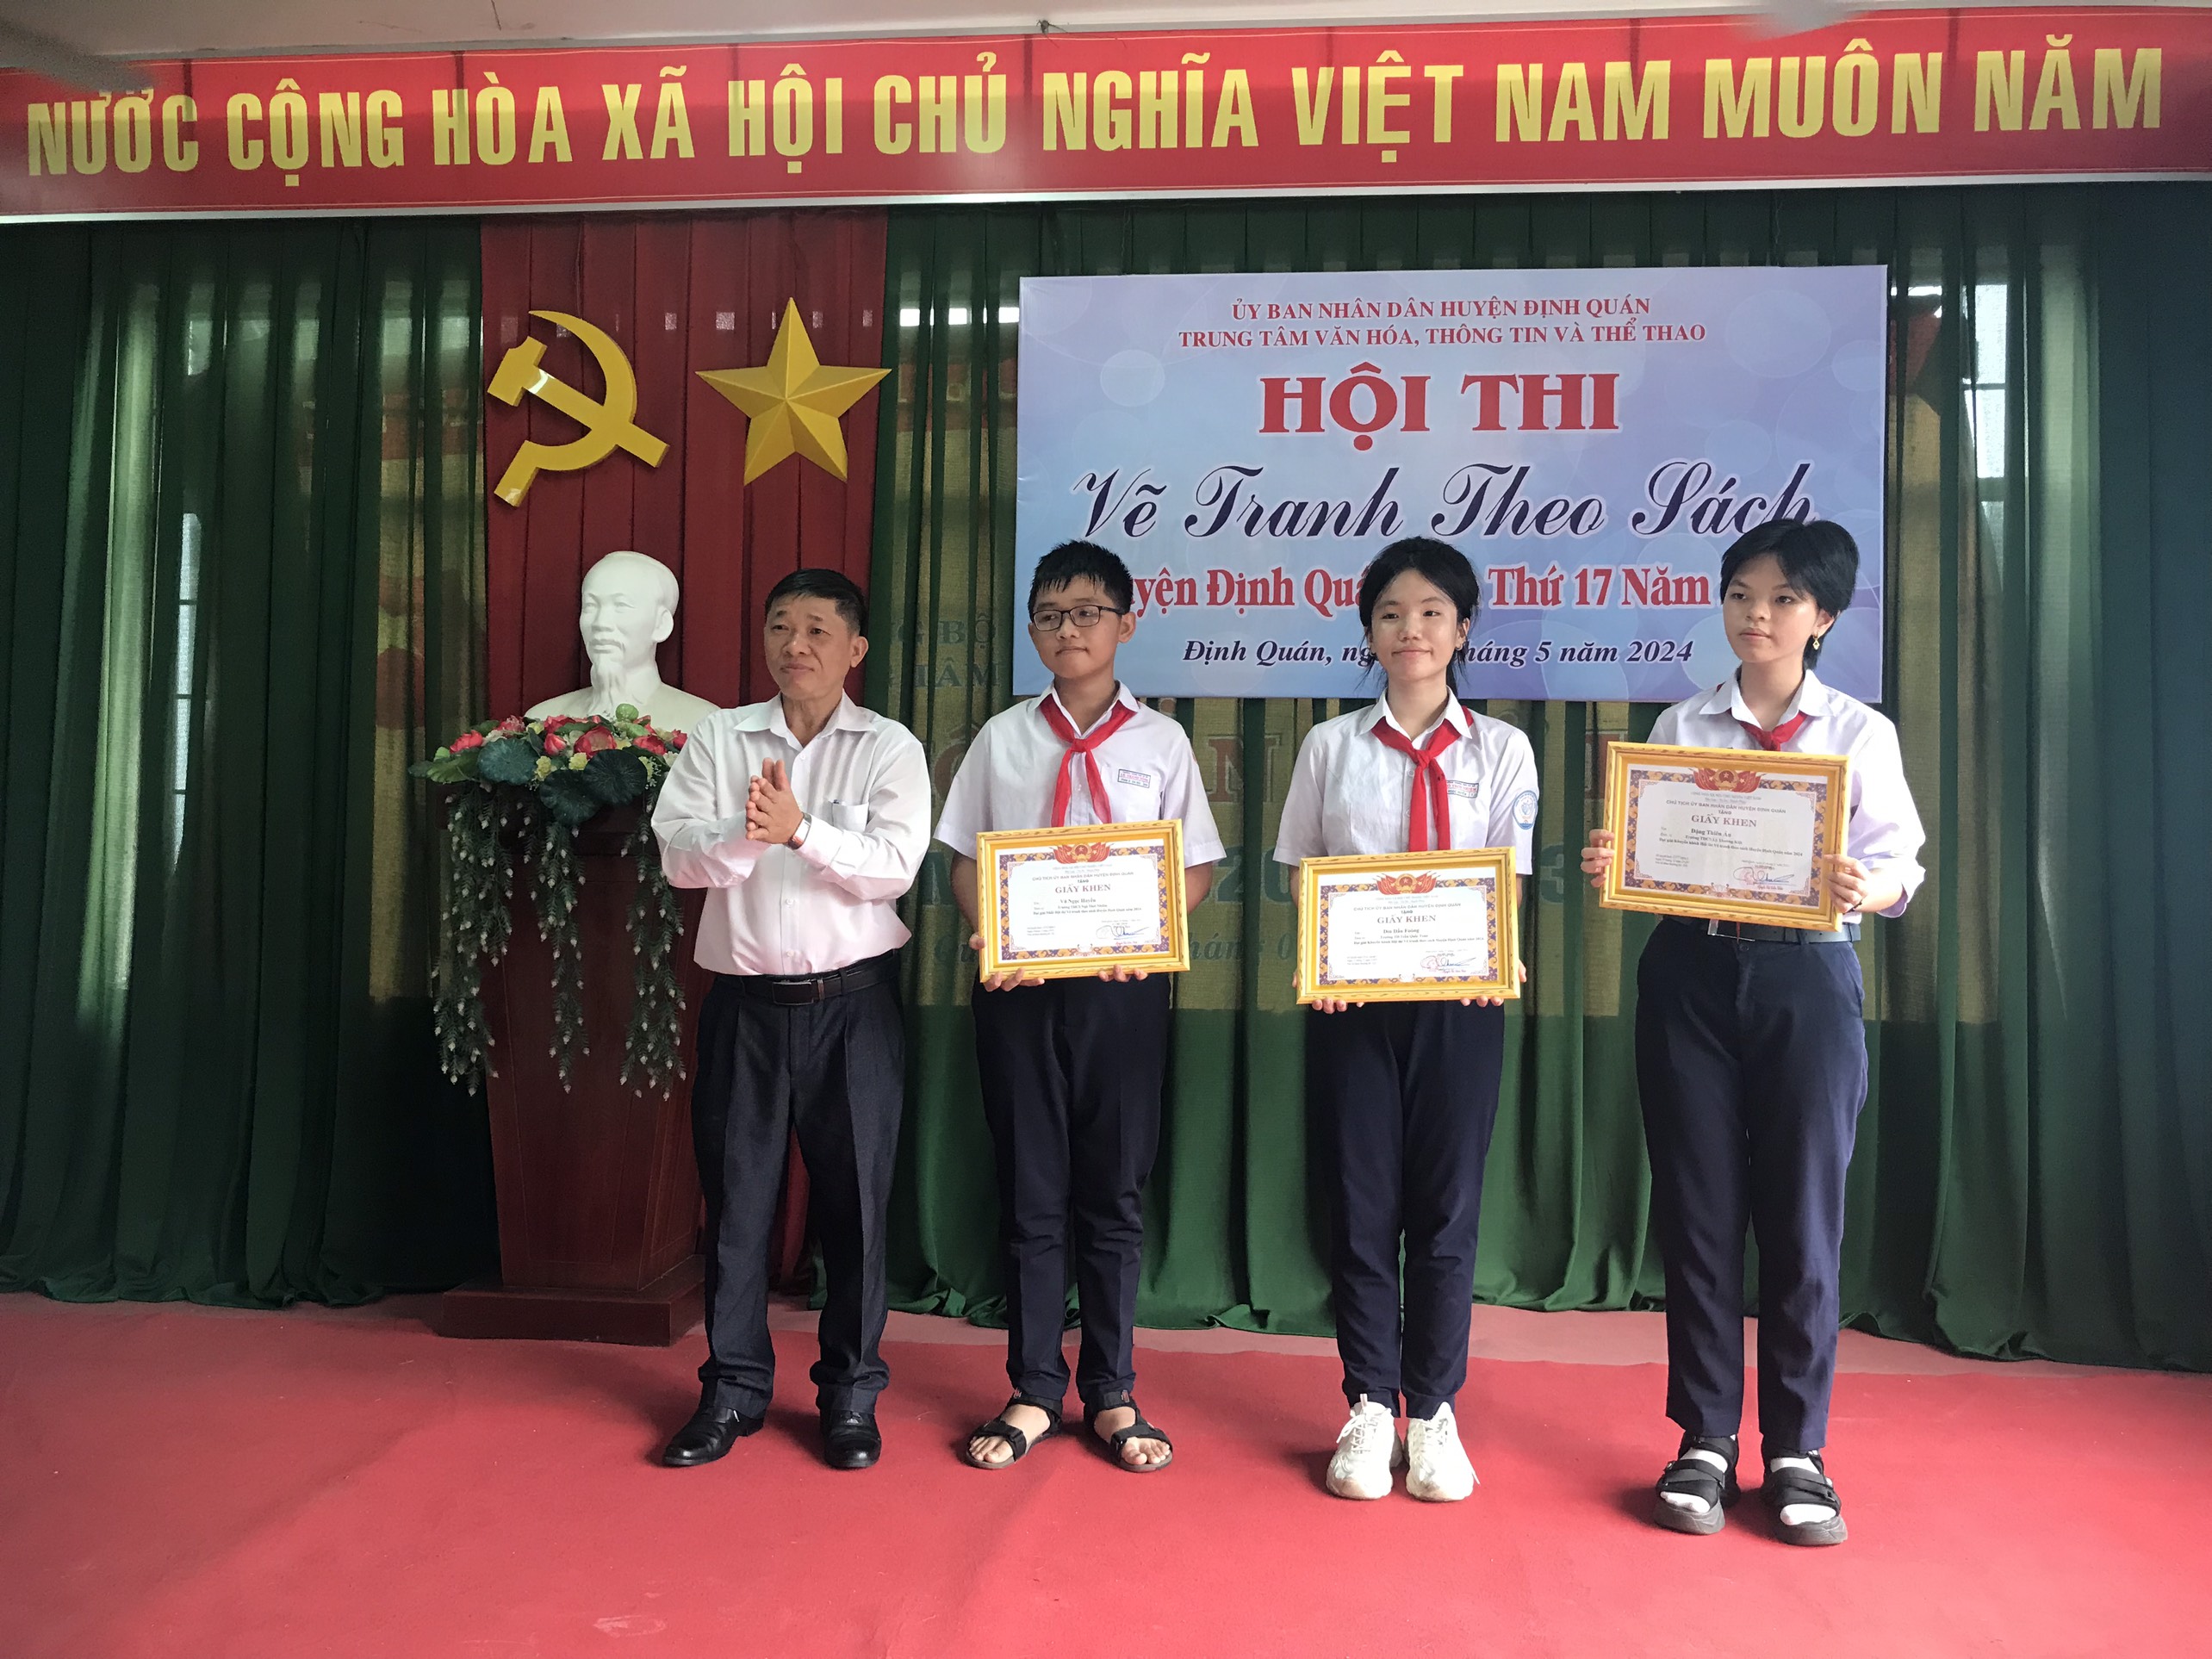 Hình 2 - Ông Lê Xuân Nghĩa, Phó trưởng Phòng GD&DT huyện Định Quán trao giải tại Hội thi.jpg